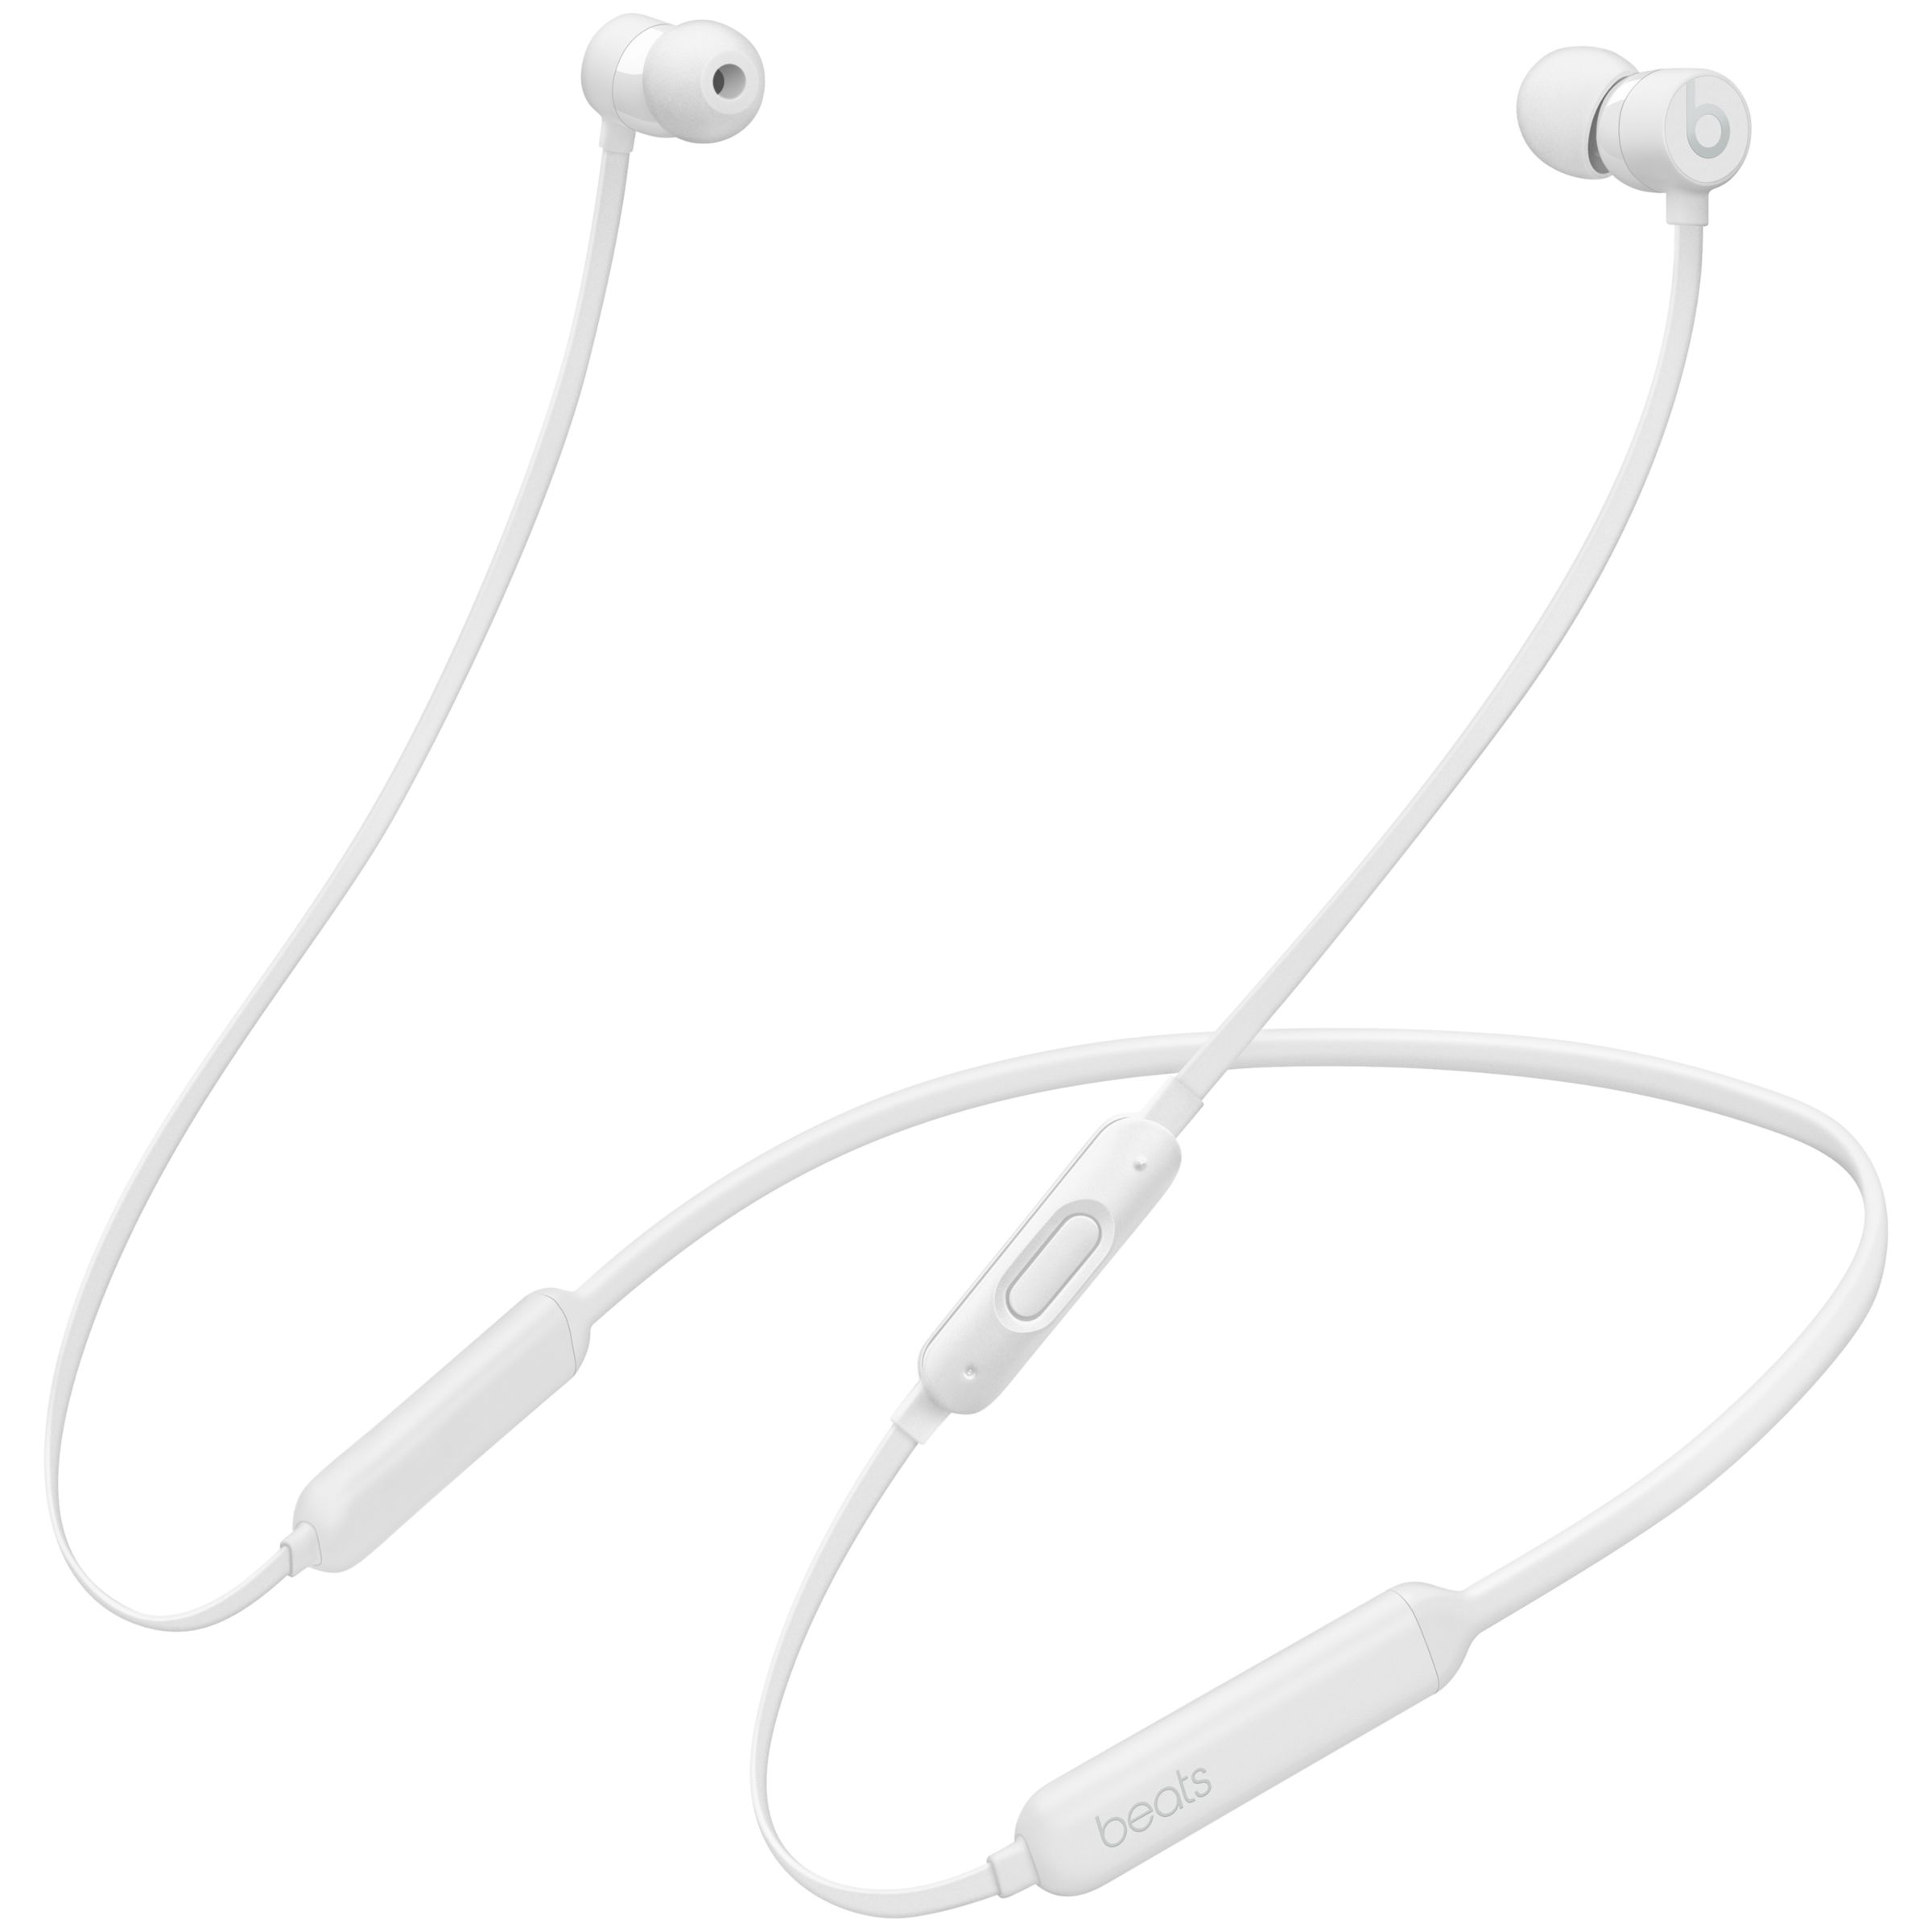 Wireless Bluetooth In-Ear Headphones 